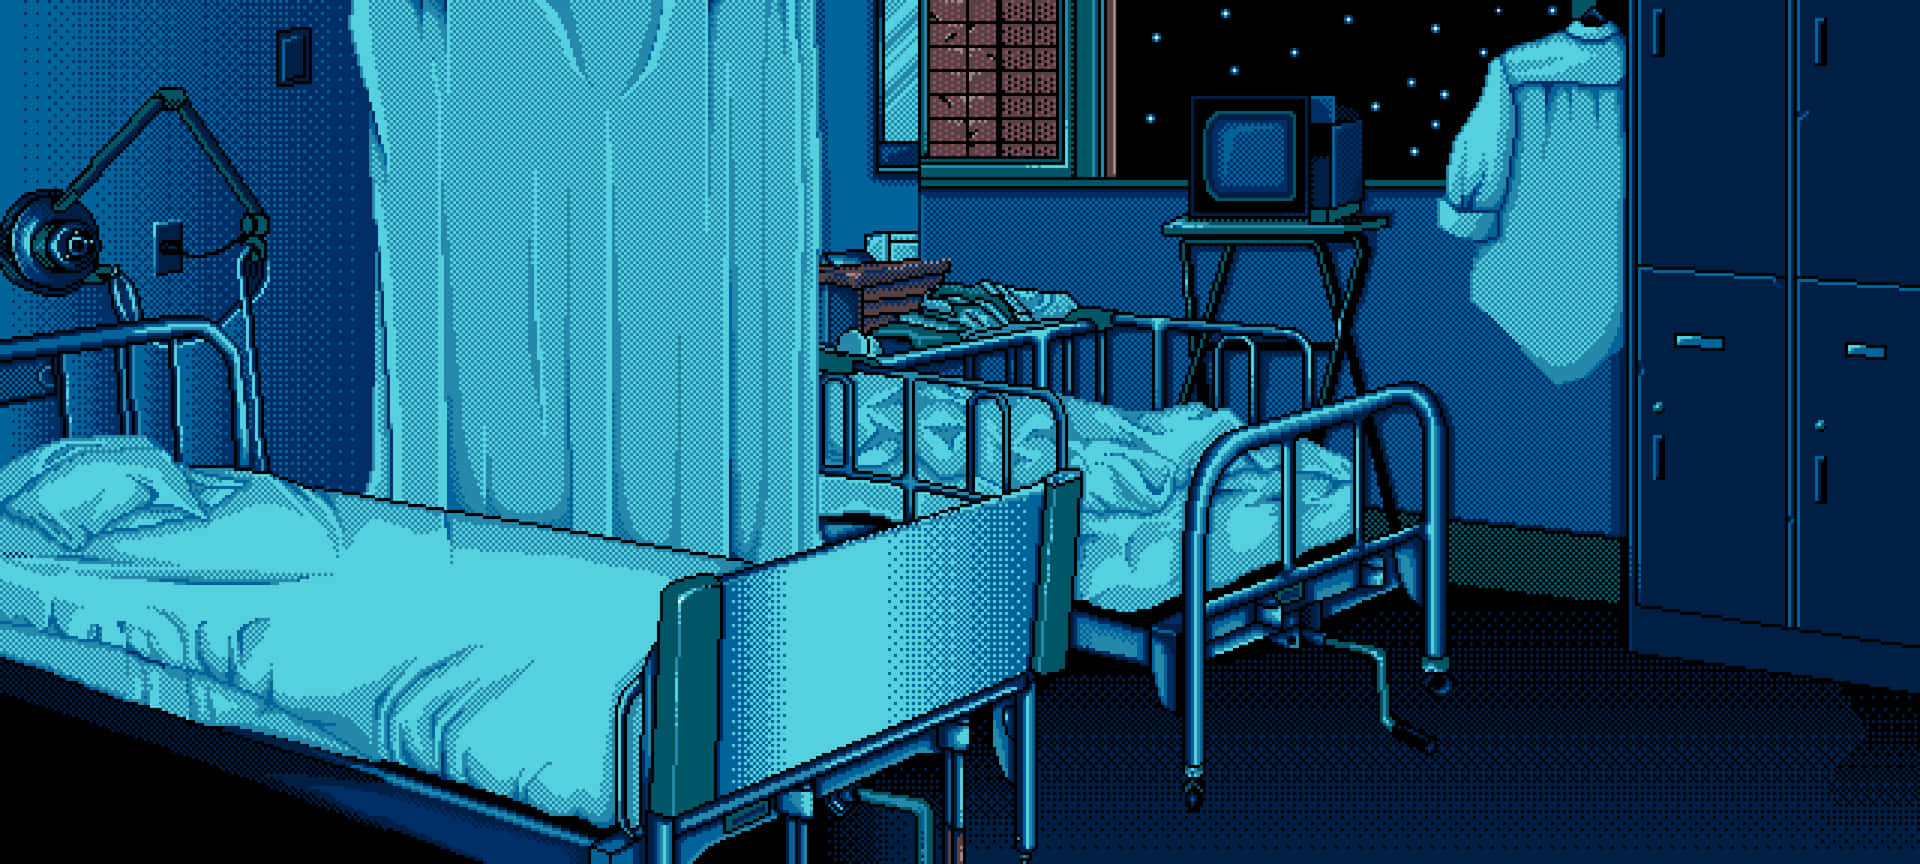 Lettoospedaliero Con Retro Pixel Art E Cielo Notturno Sfondo